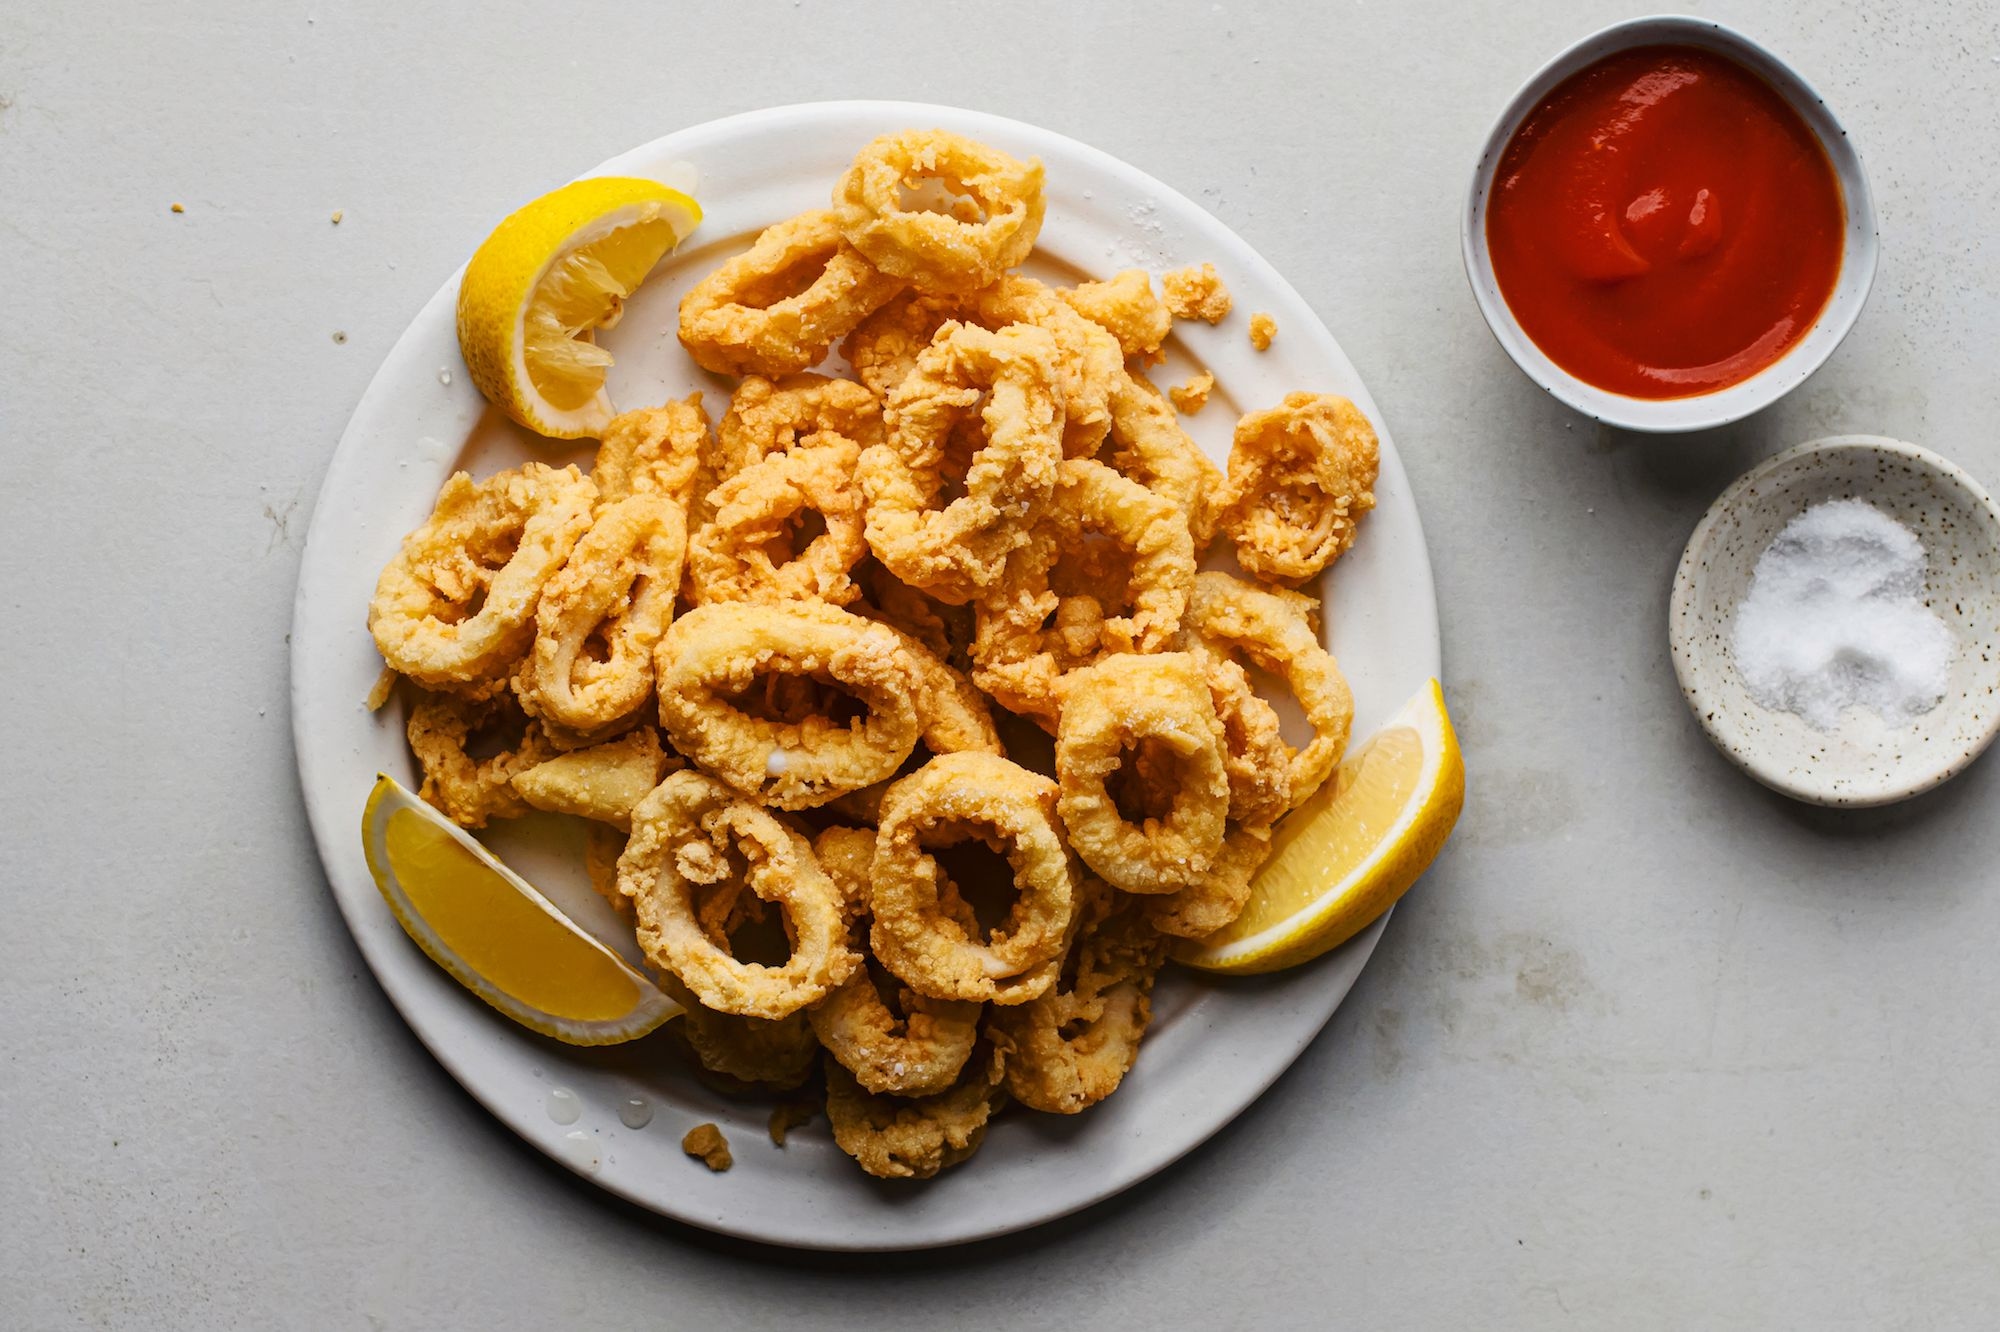 6. Deep-Fried Calamari / イカの唐揚げ